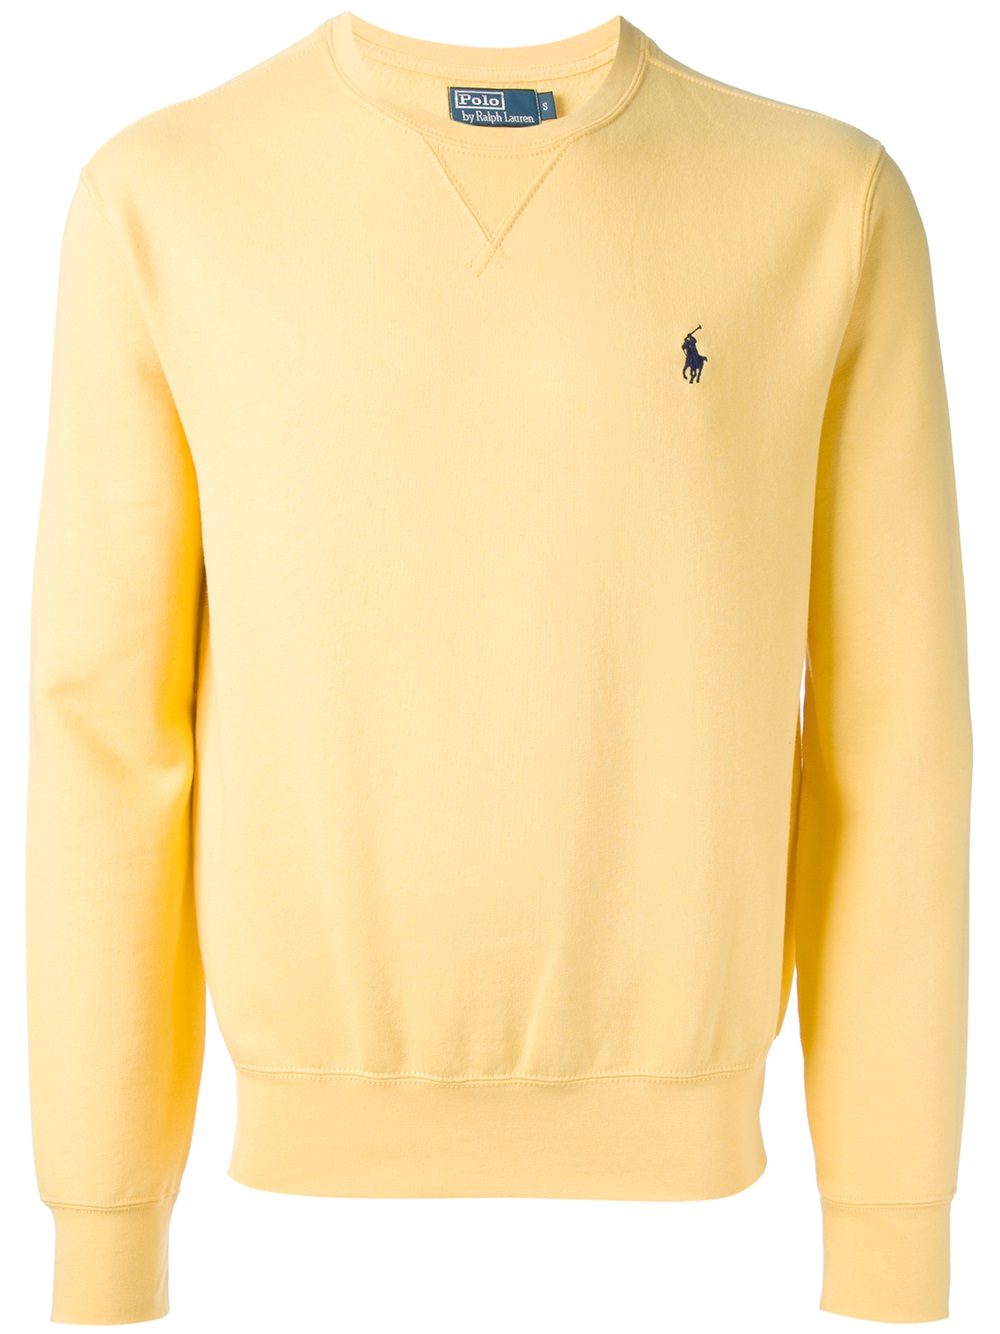 Polo Ralph Lauren Men's Crewneck Sweatshirt